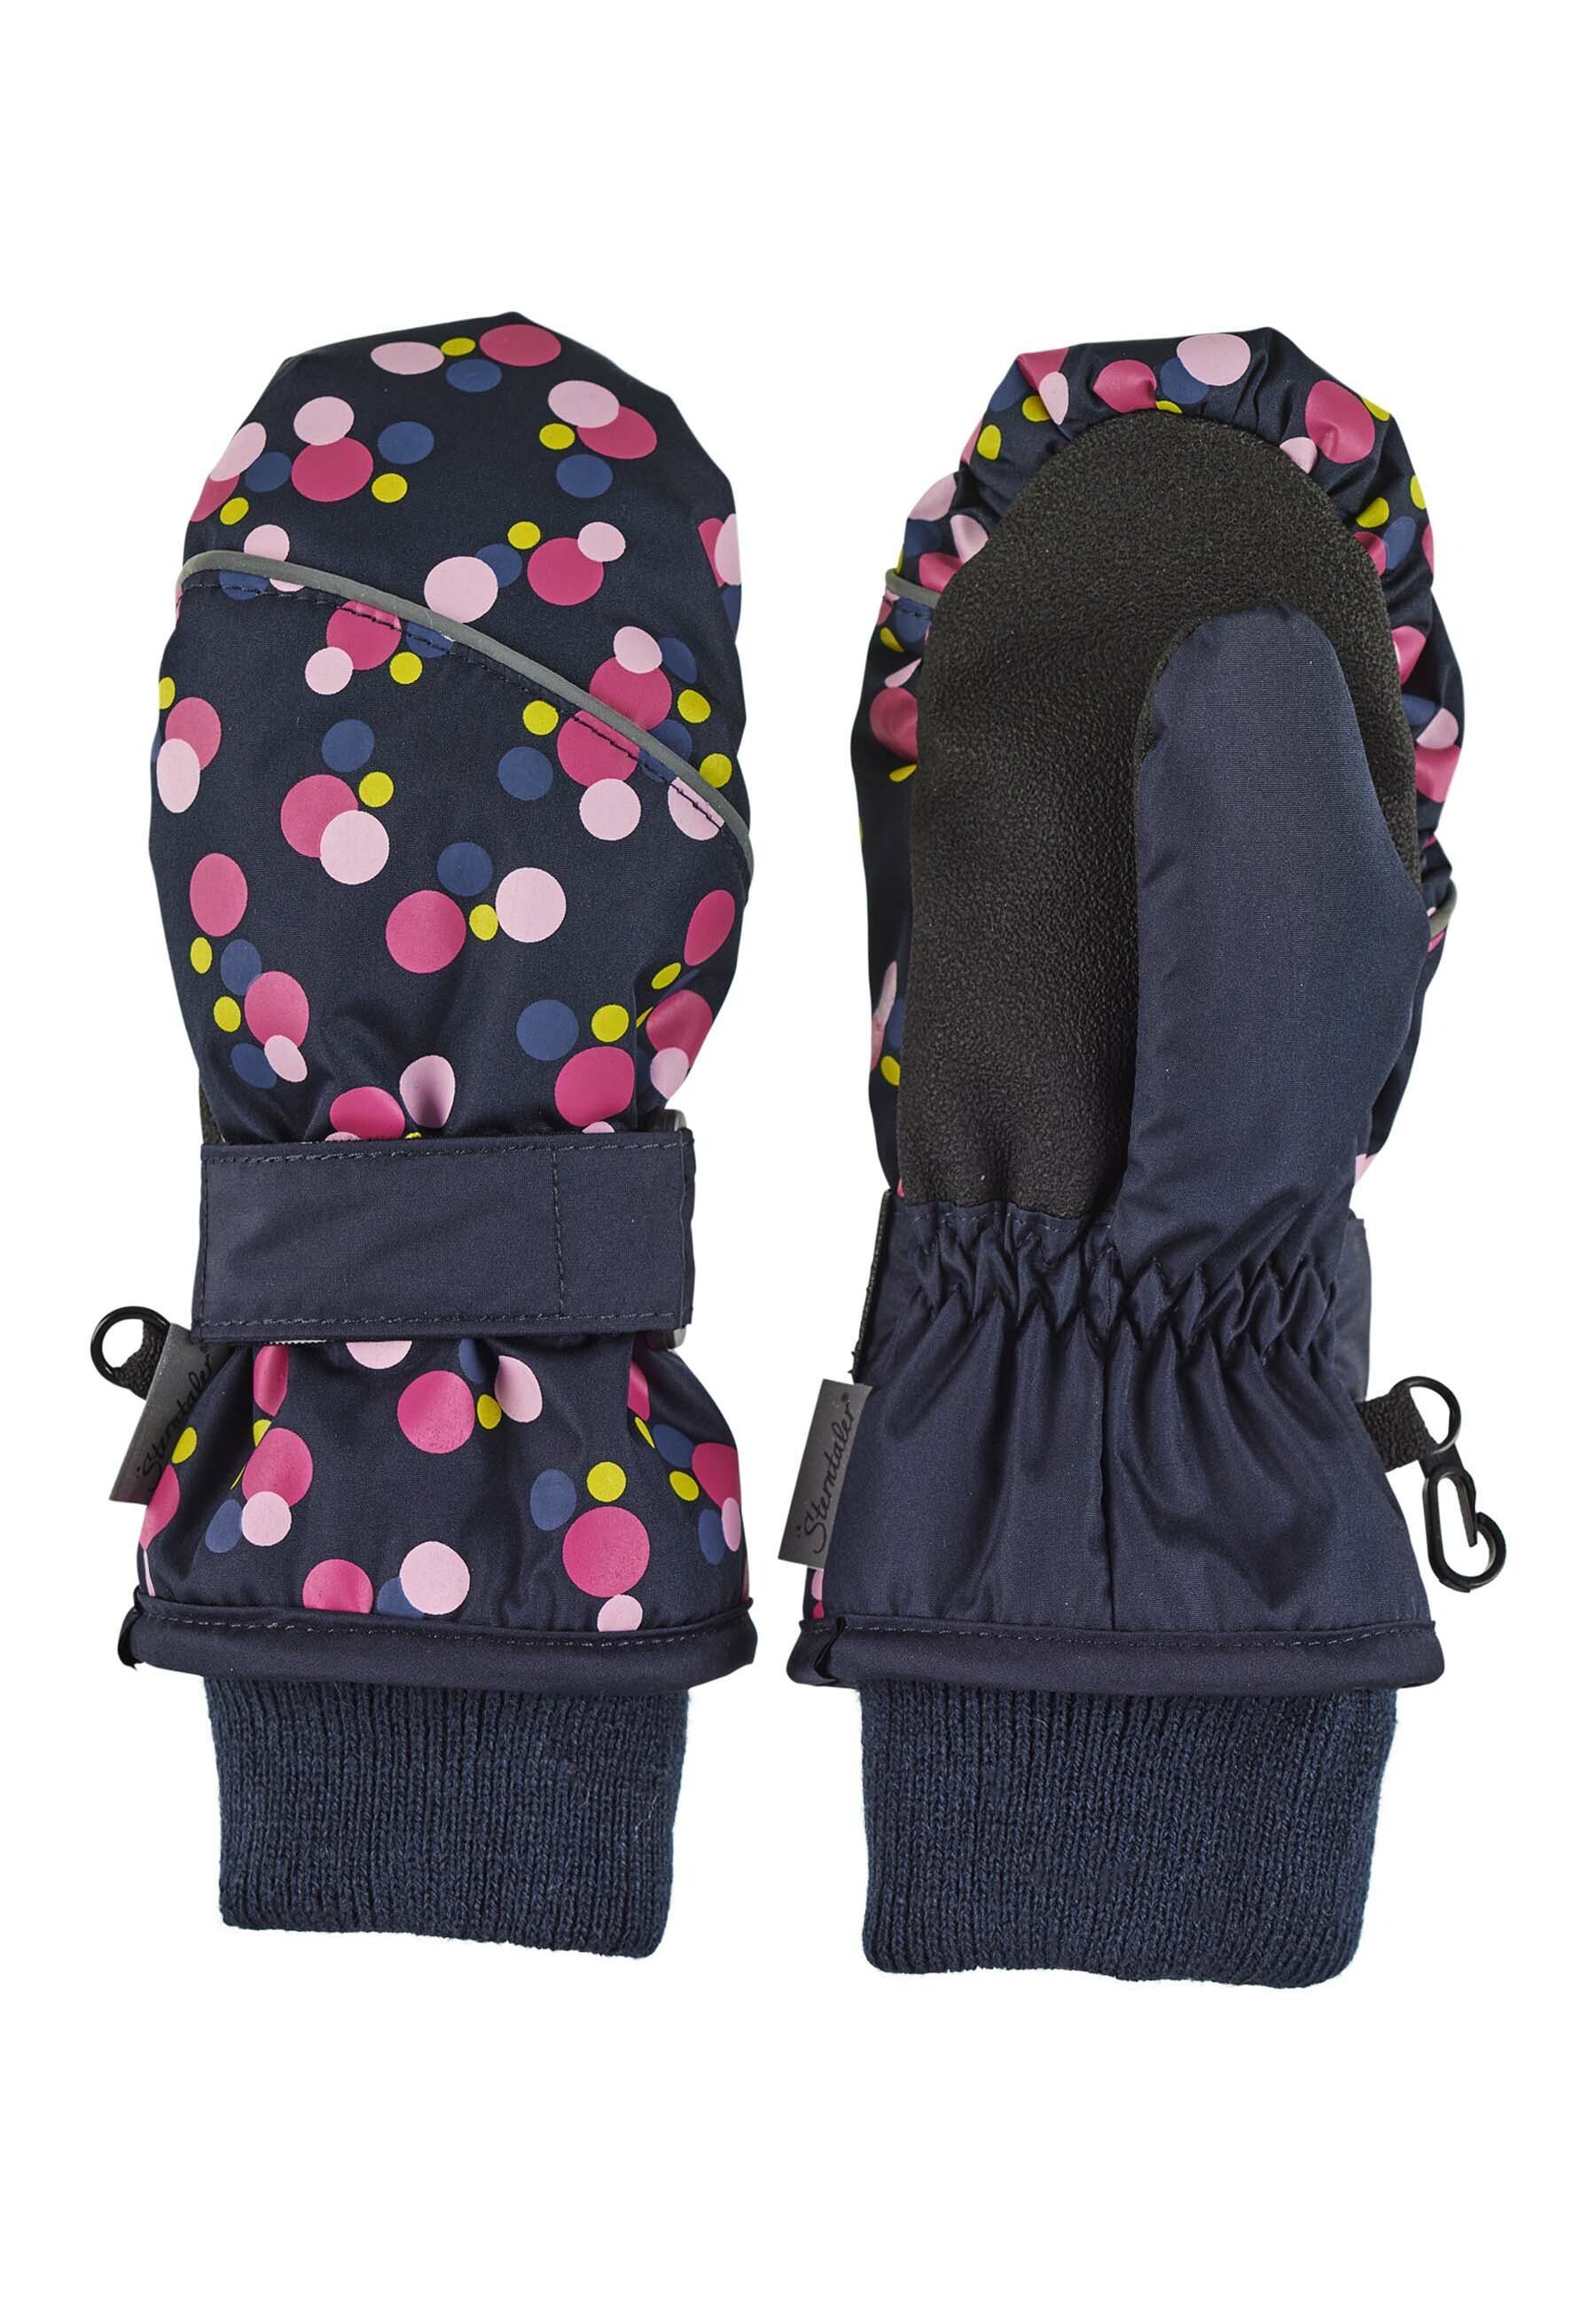 Sterntaler® Fäustlinge Fäustel Fausthandschuhe - Fäustlinge warme Handschuhe für Kinder wasserdicht Hände Babyhandschuhe - gemustert Kinderhandschuhe - marine